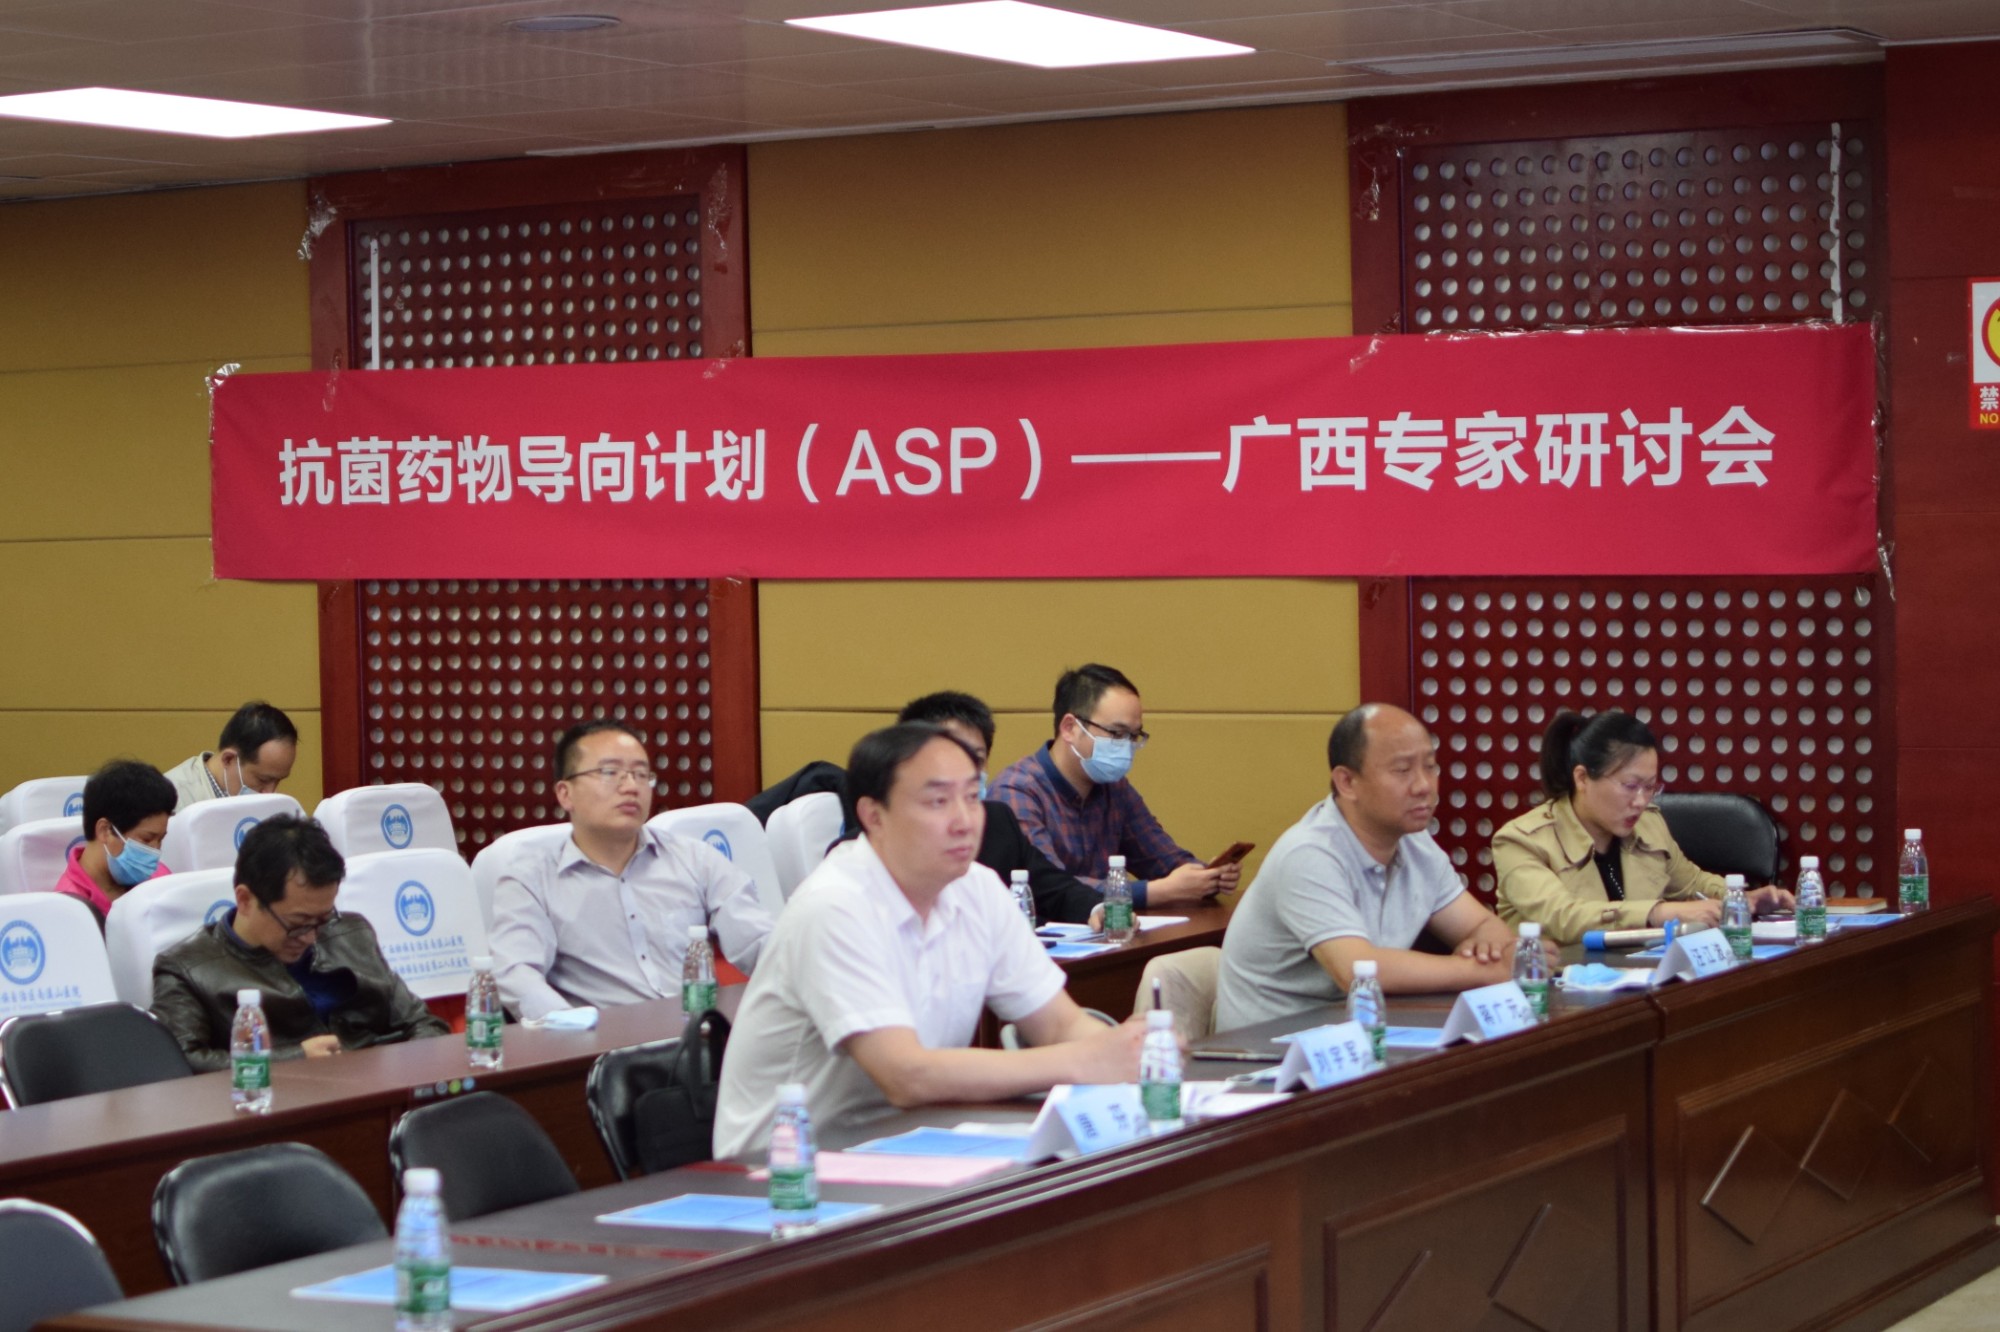 南溪山医院成功举办“推动中国抗菌药物管理建设之ASP计划”培训会